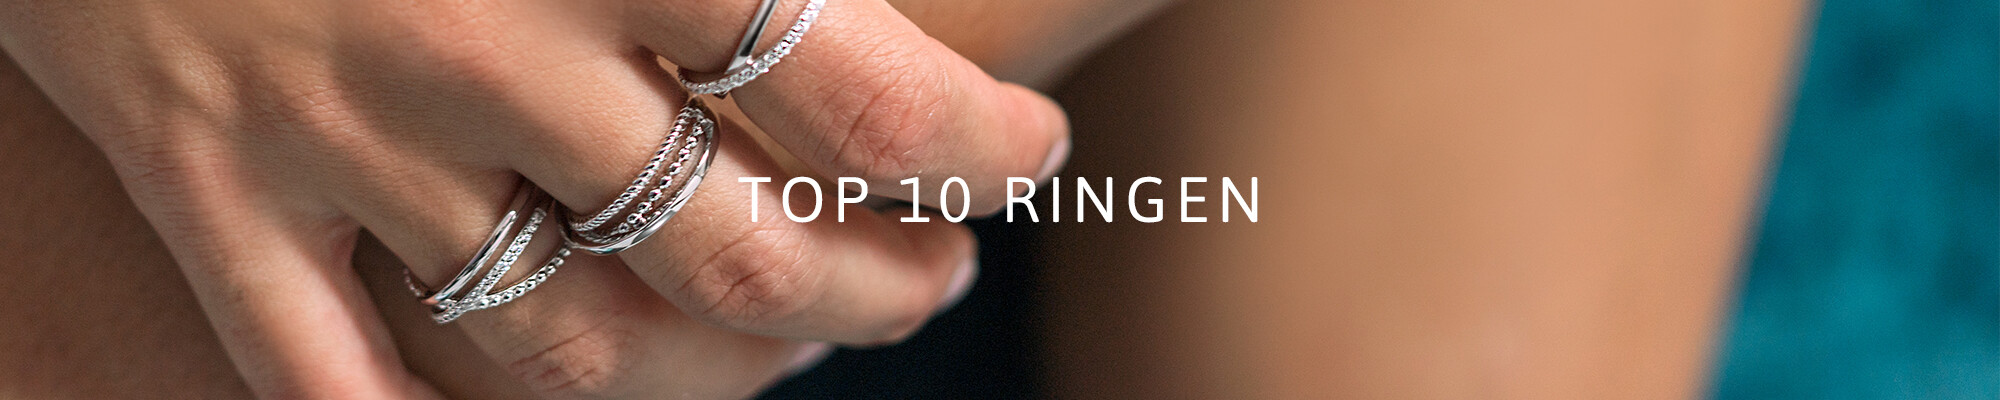 Top 10 ringen